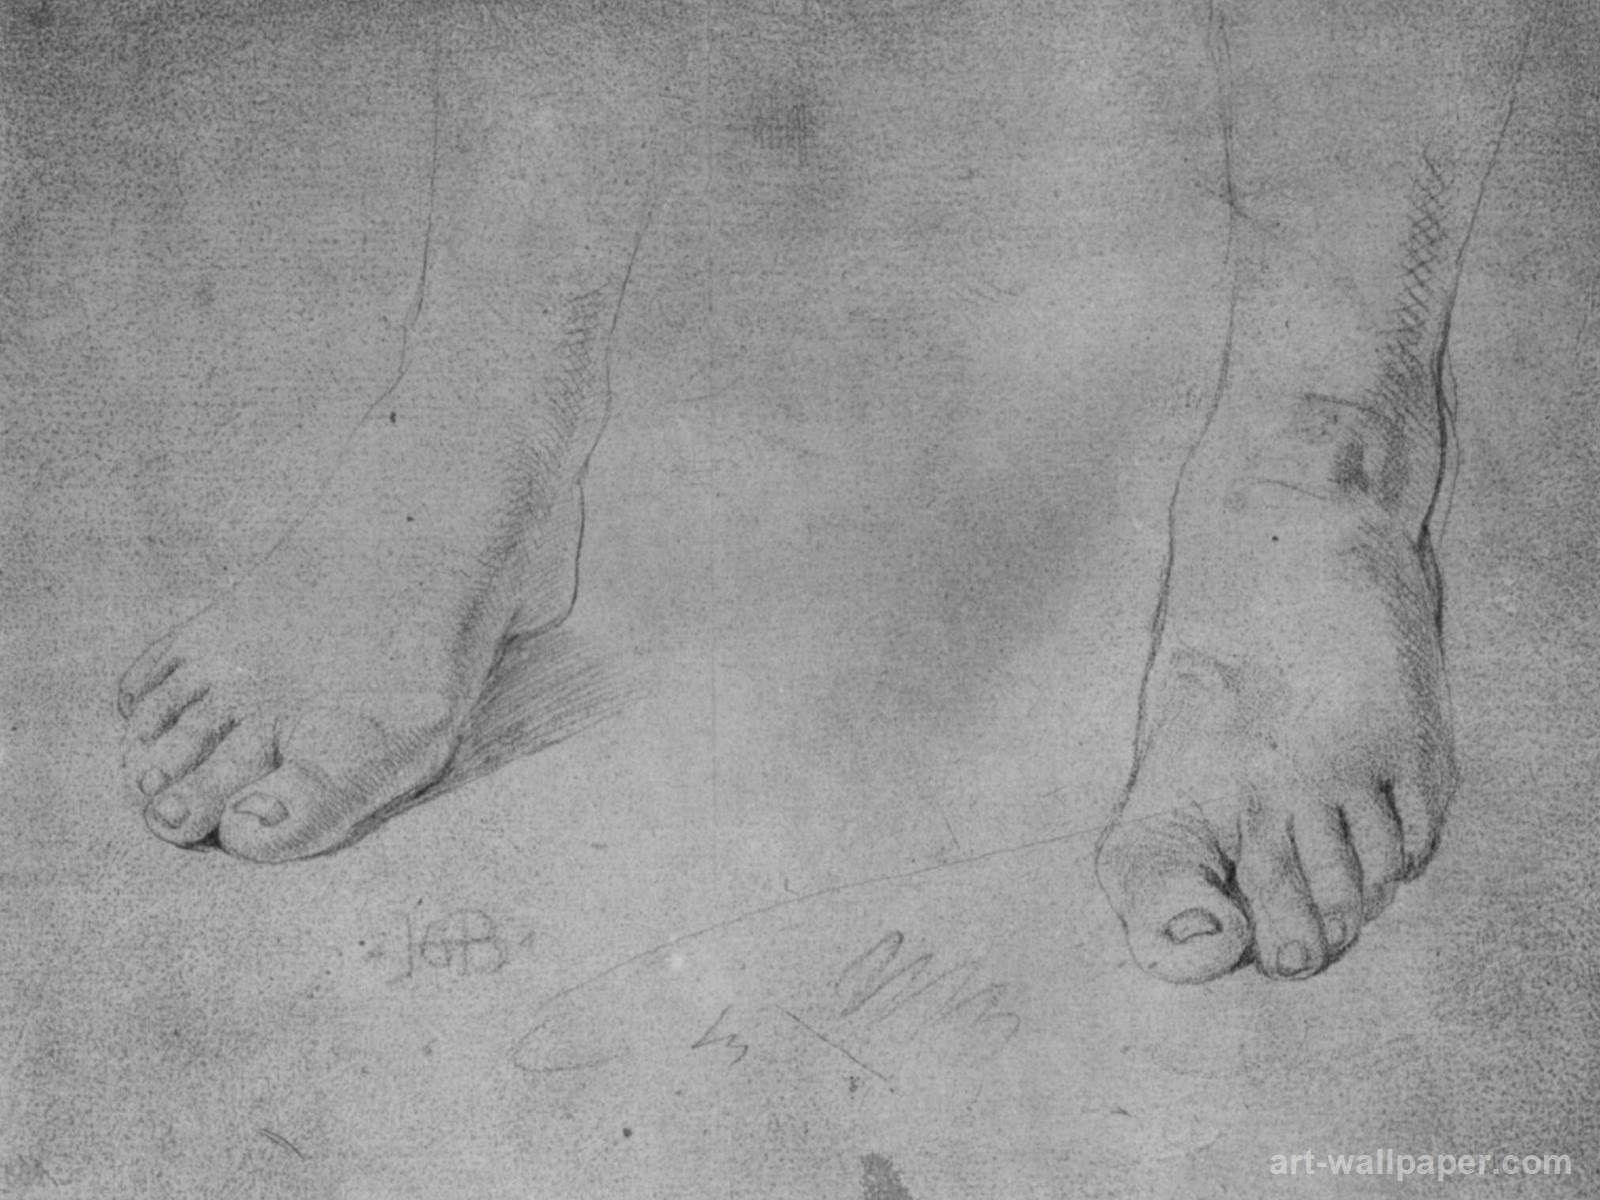 Foot studies , Grien Hans Wallpapers